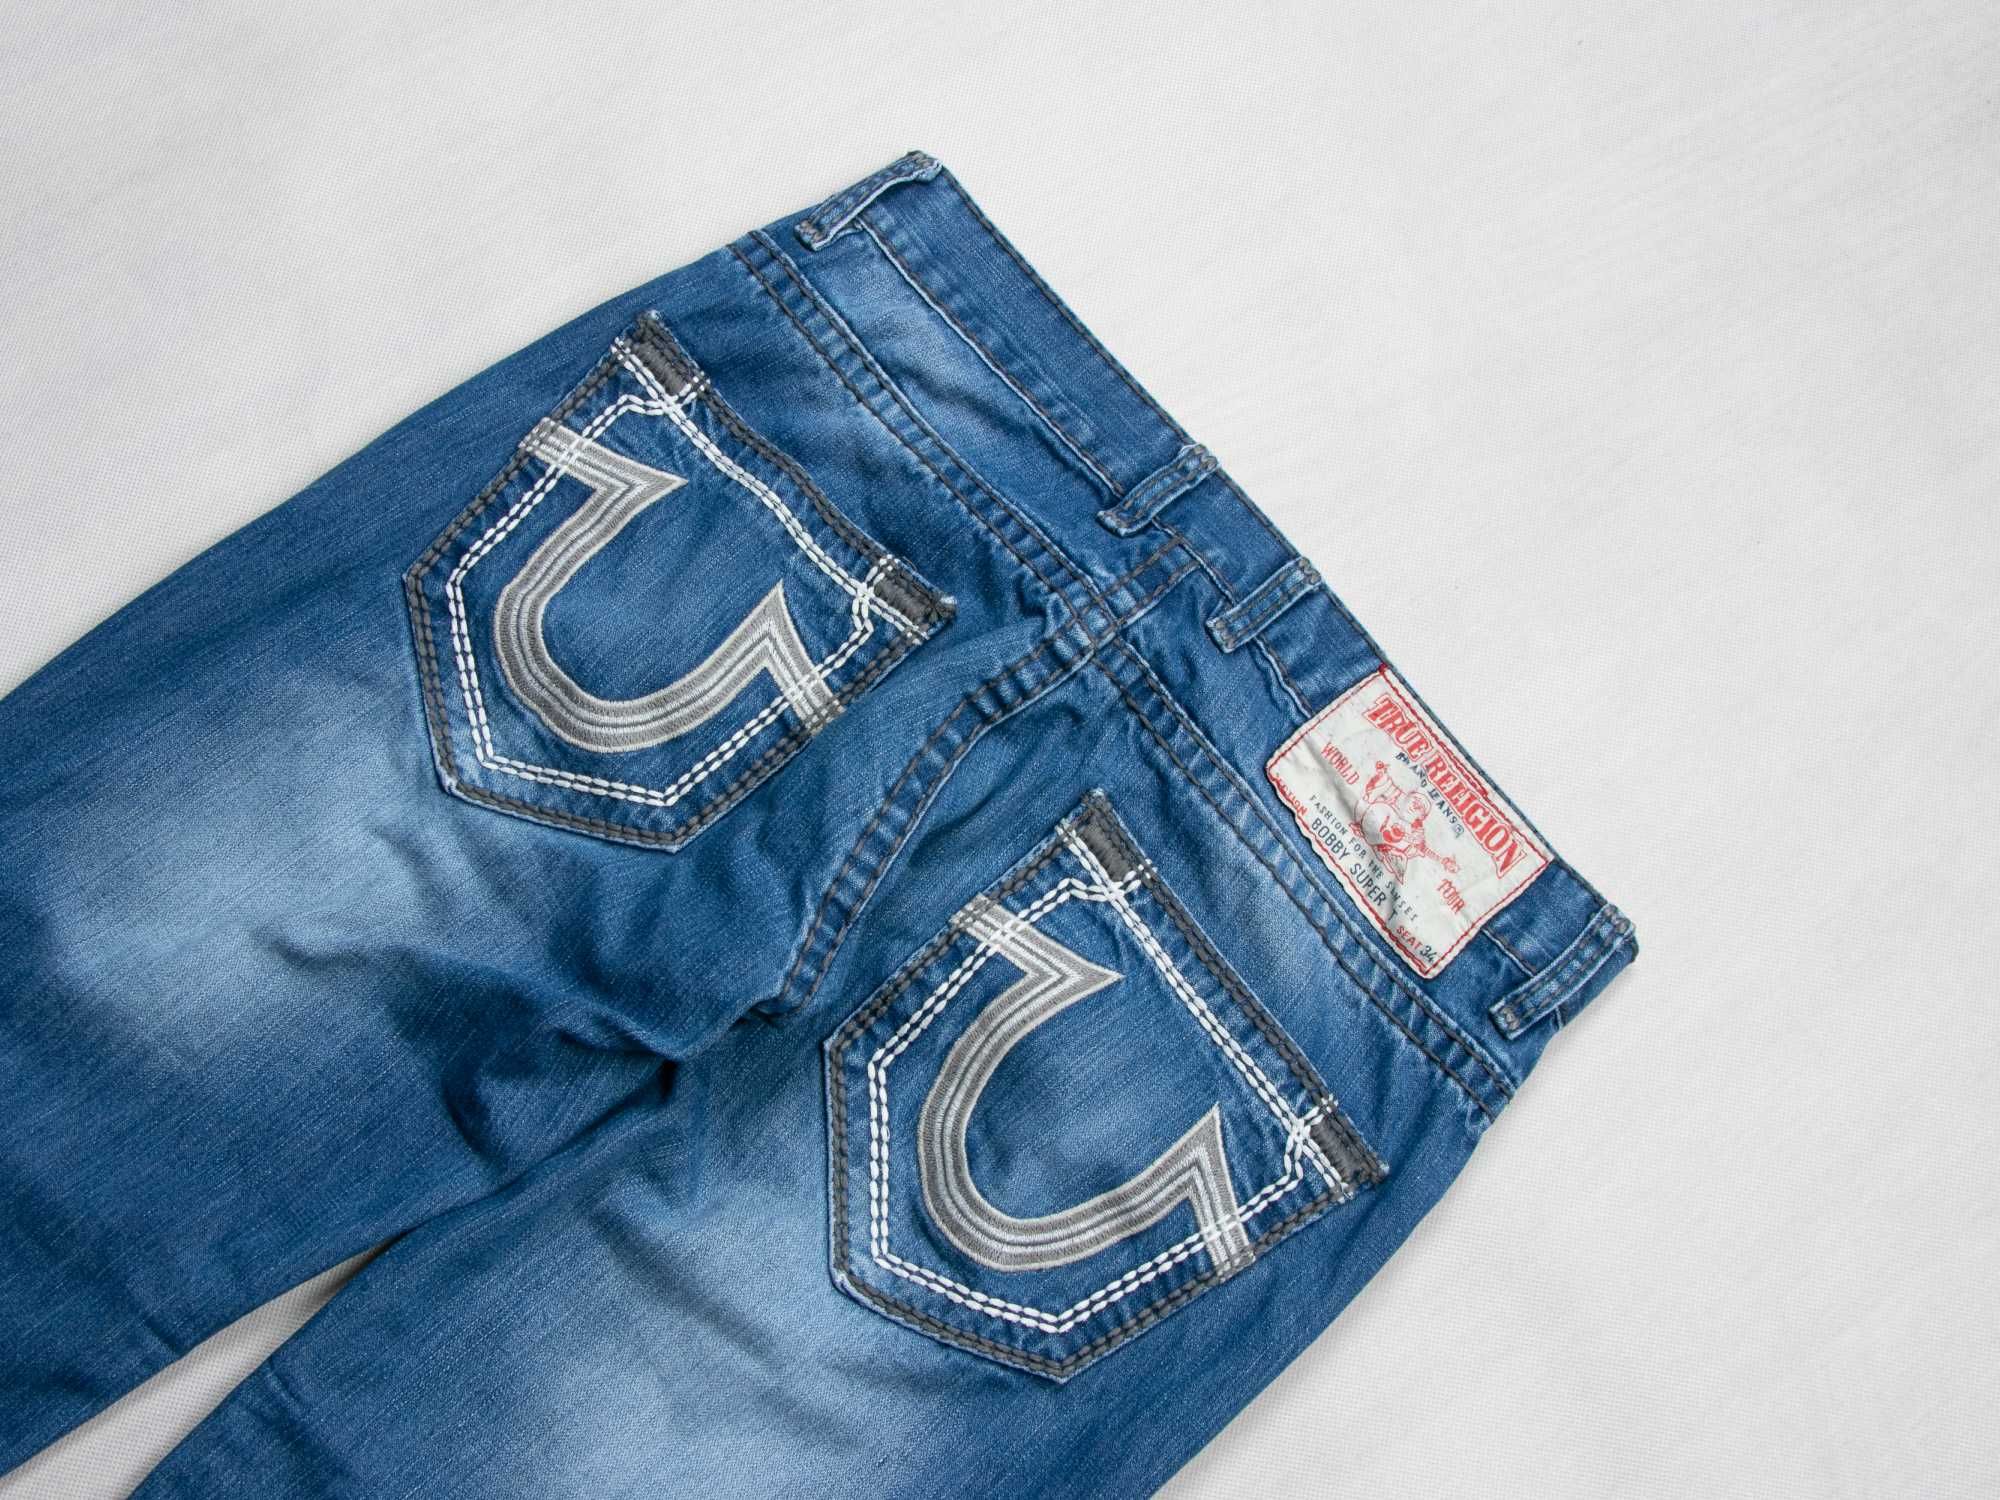 Spodnie jeansowe True Religion bobby super T 36us drip